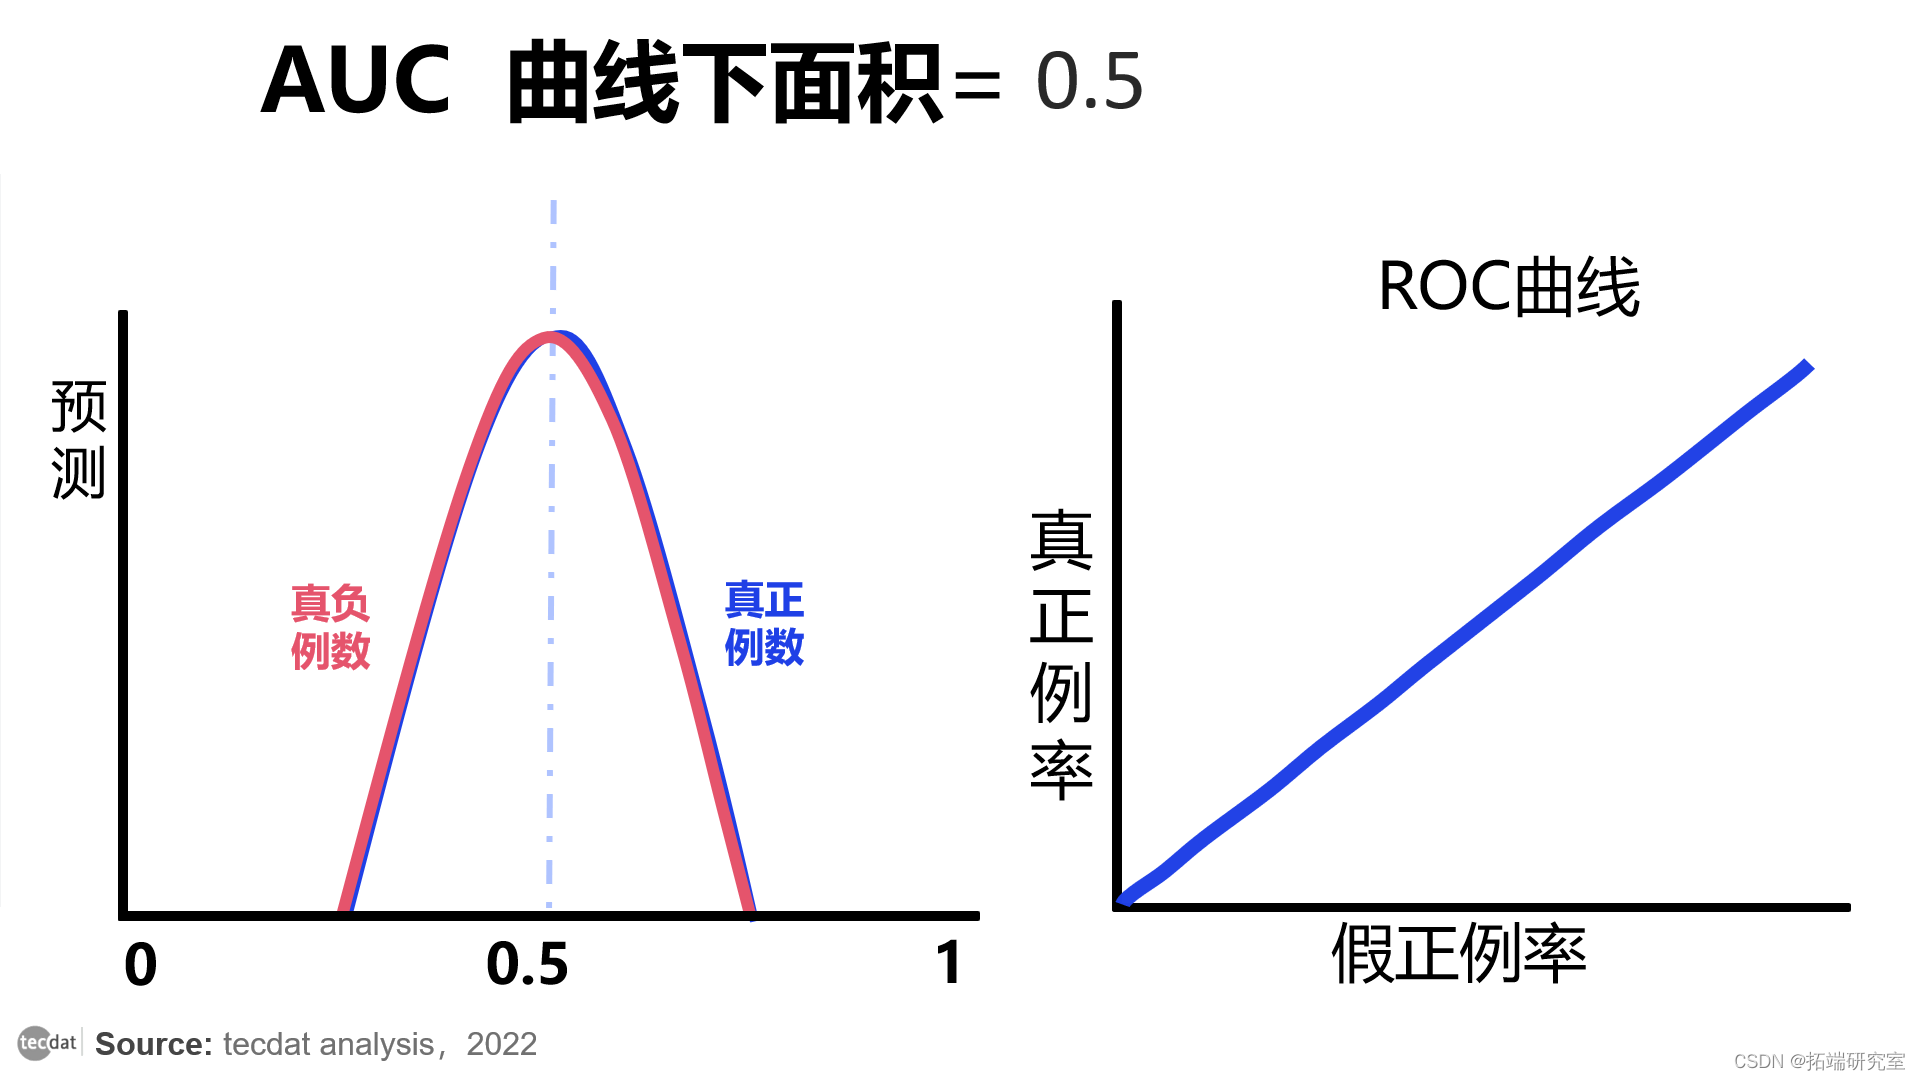 视频|分类模型评估:精确率、召回率、ROC曲线、AUC与R语言生存分析时间依赖性ROC实现|附代码数据_ML_08